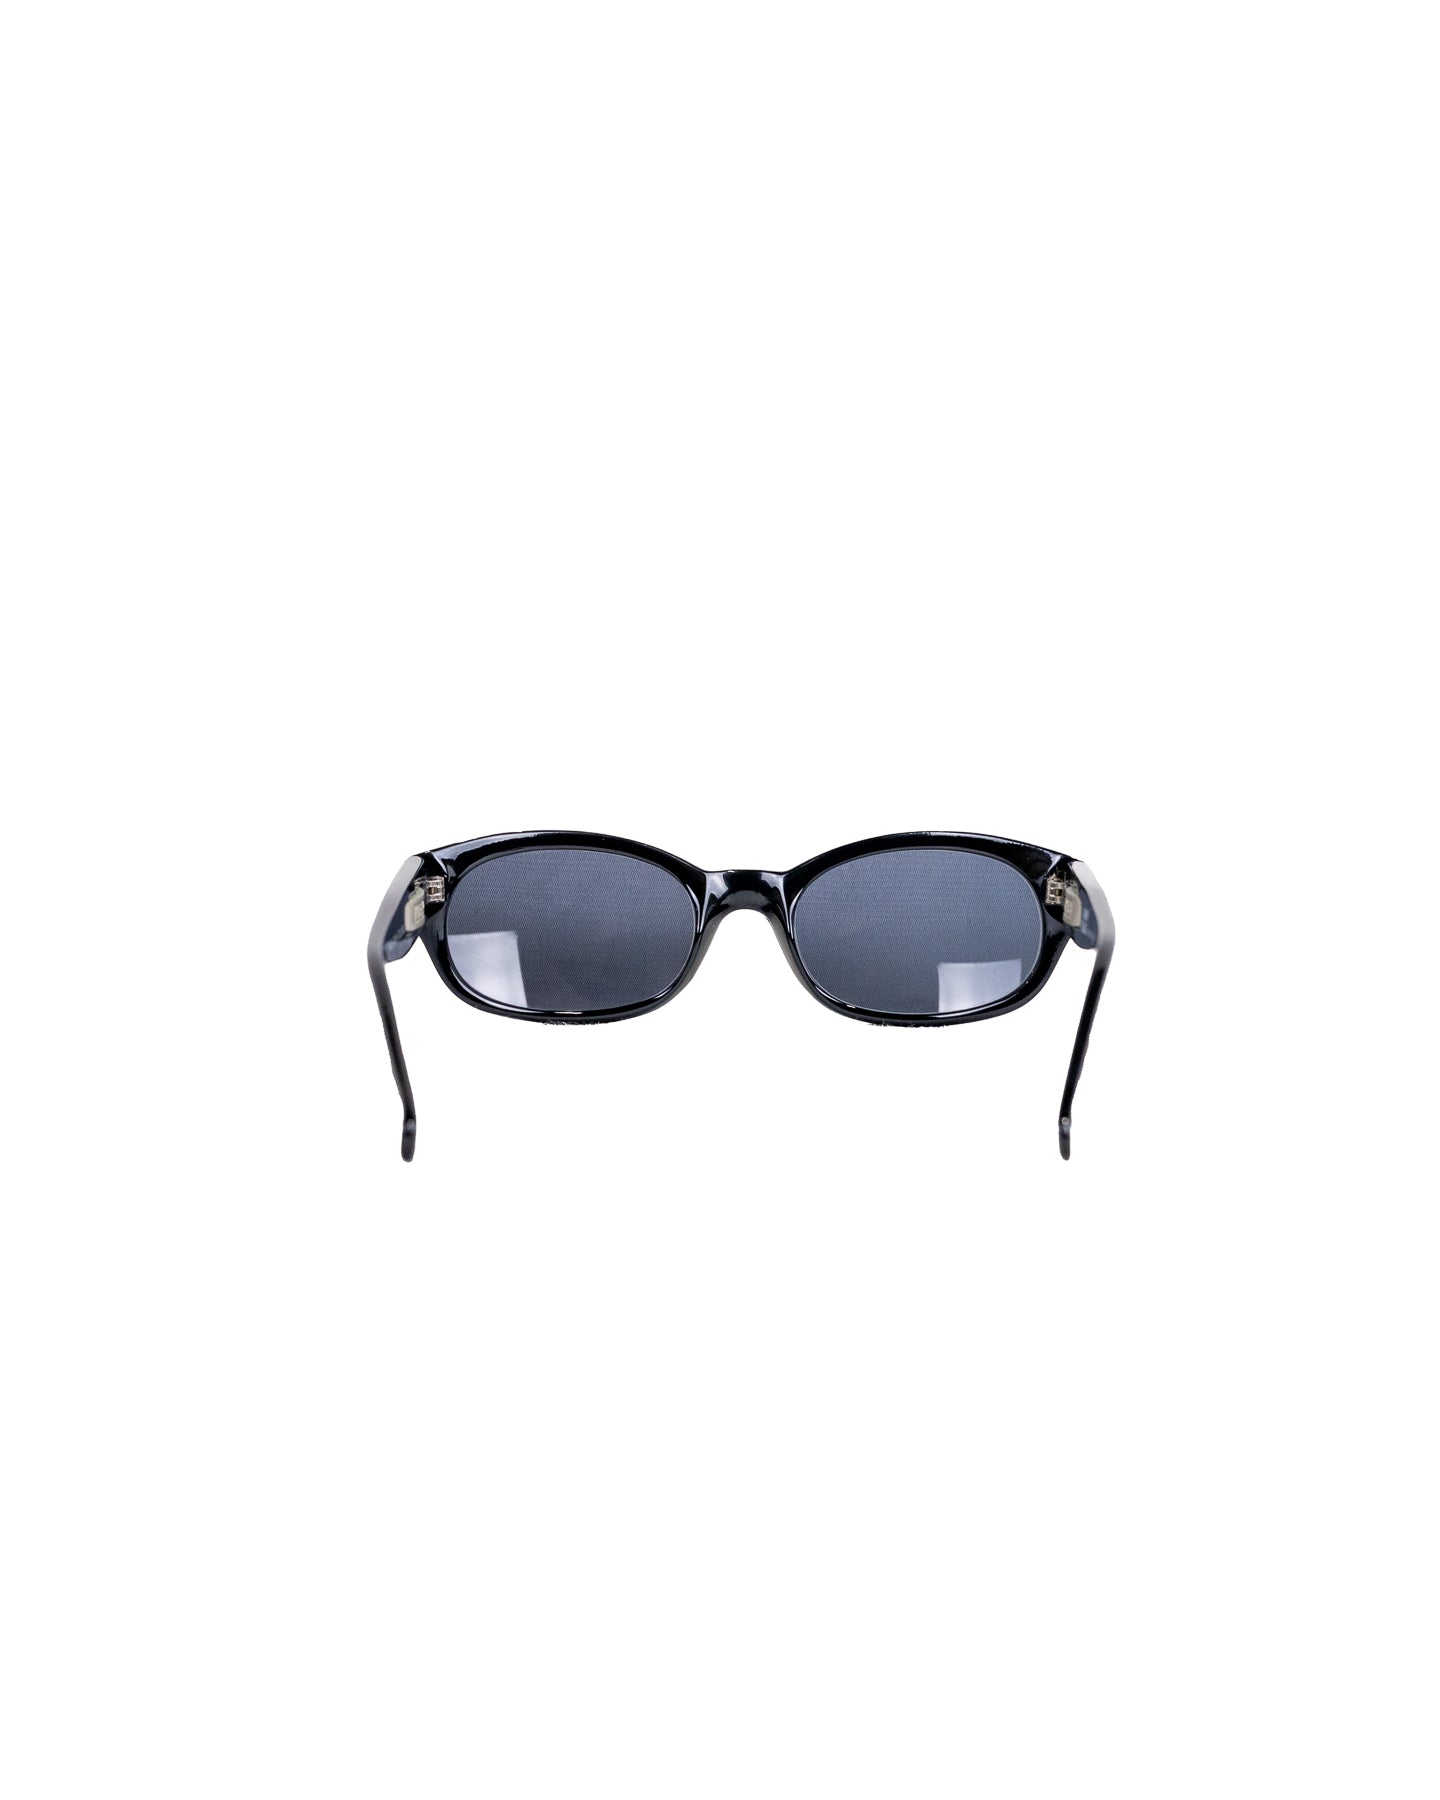 Óculos de sol vintage Gianni Versace 1996 